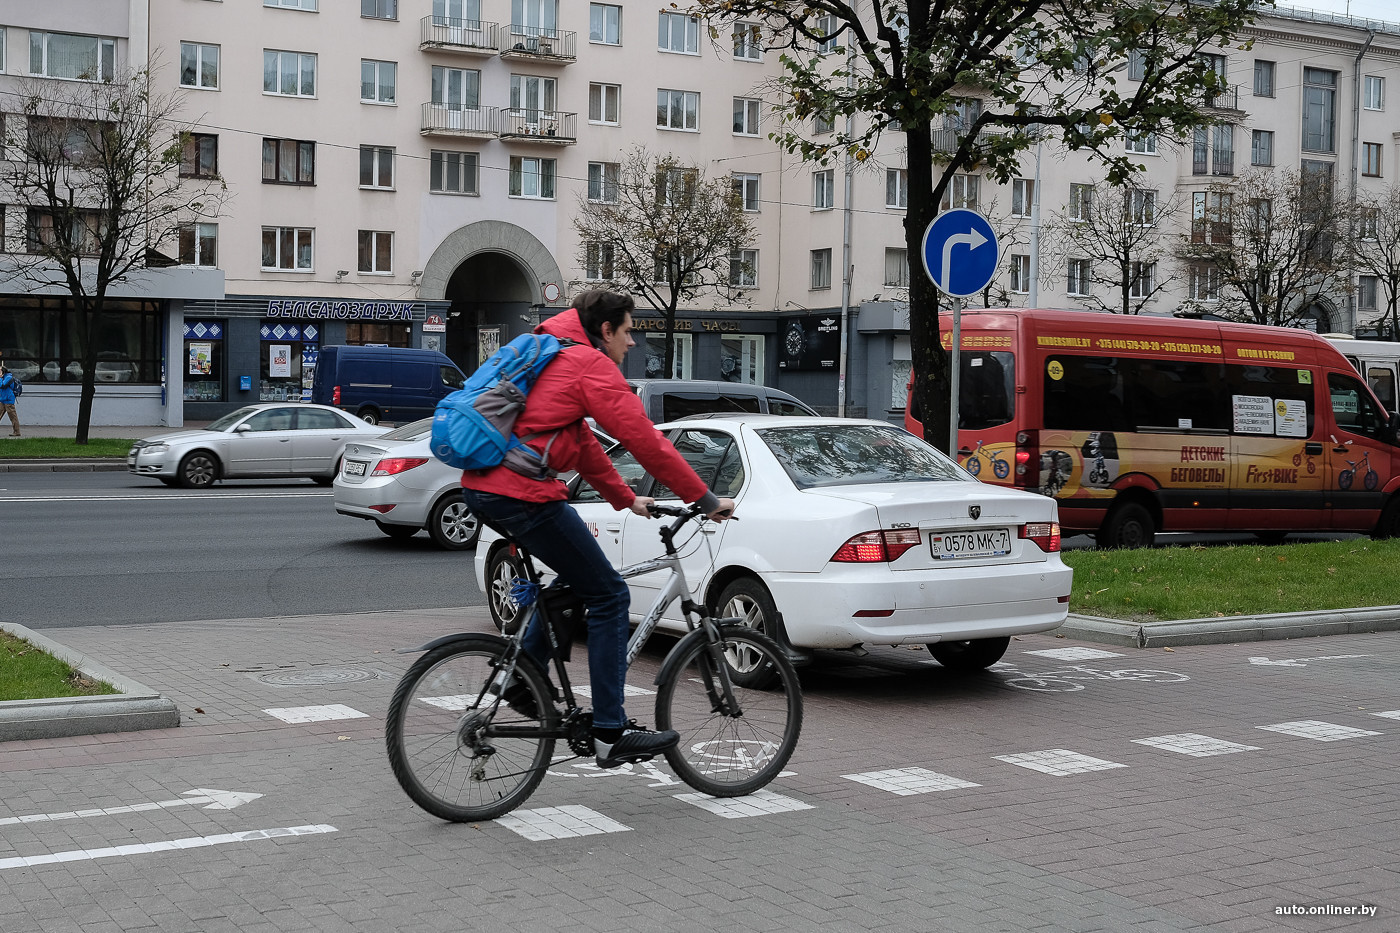 Велосипедисты на тротуаре. Велосипедист на дороге. Велобезопасность. Уступают водители или велосипедисты. Велосипед водитель жакет.